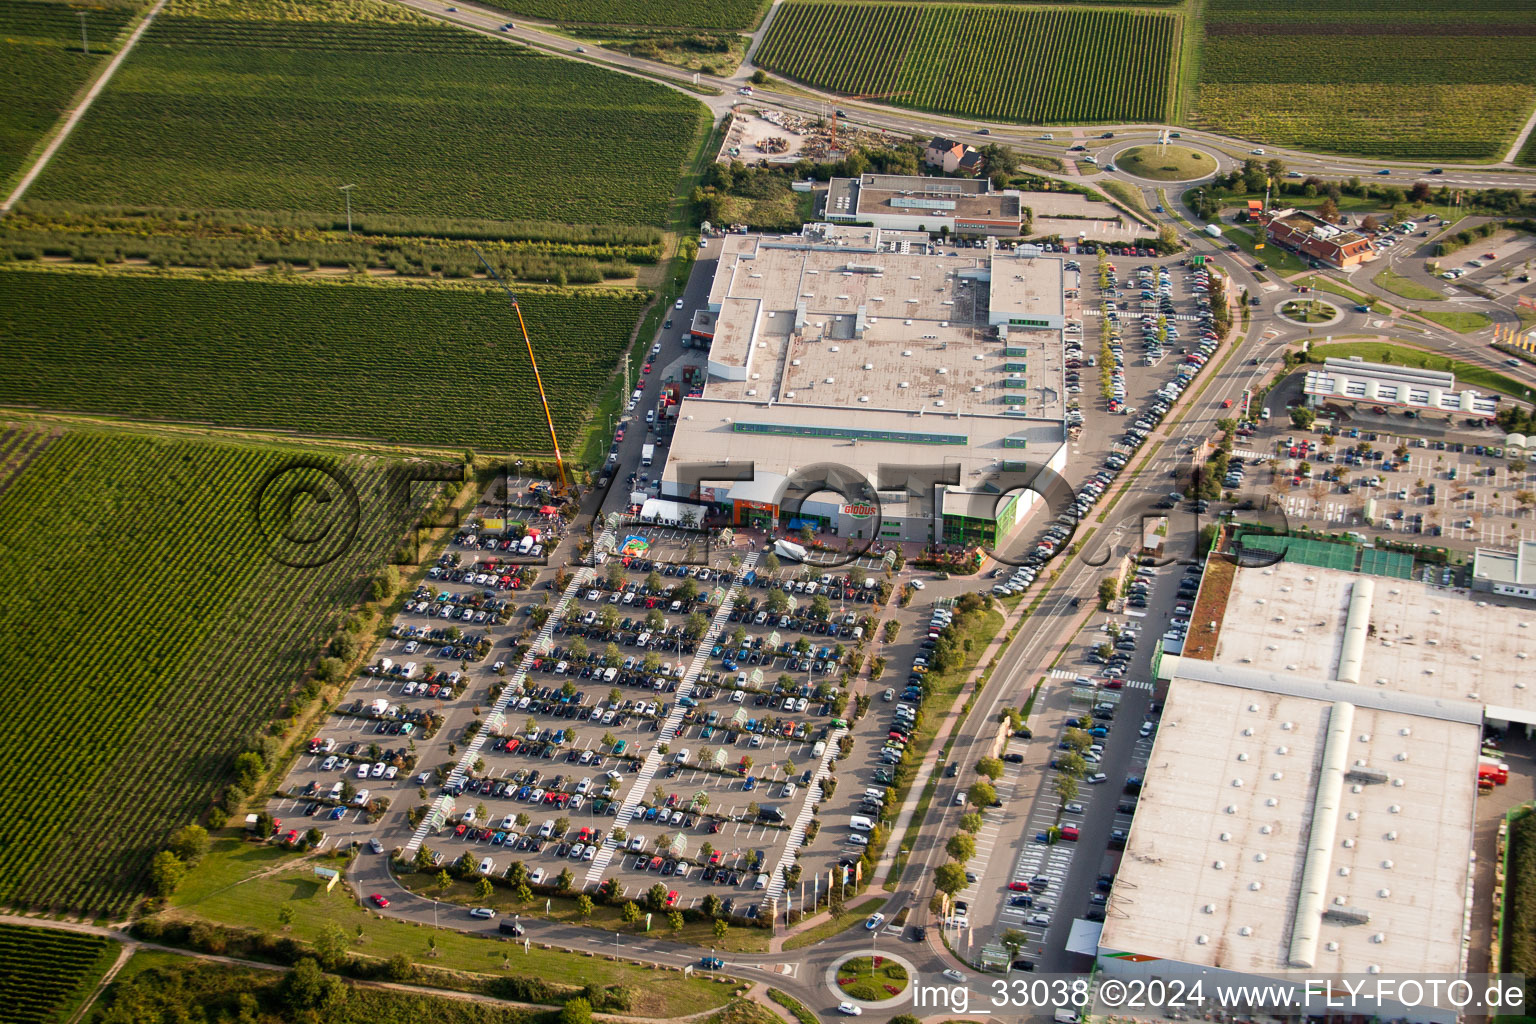 Luftbild von Fachmarktzentrum: Dehner, Hela, Globus in Neustadt an der Weinstraße im Bundesland Rheinland-Pfalz, Deutschland